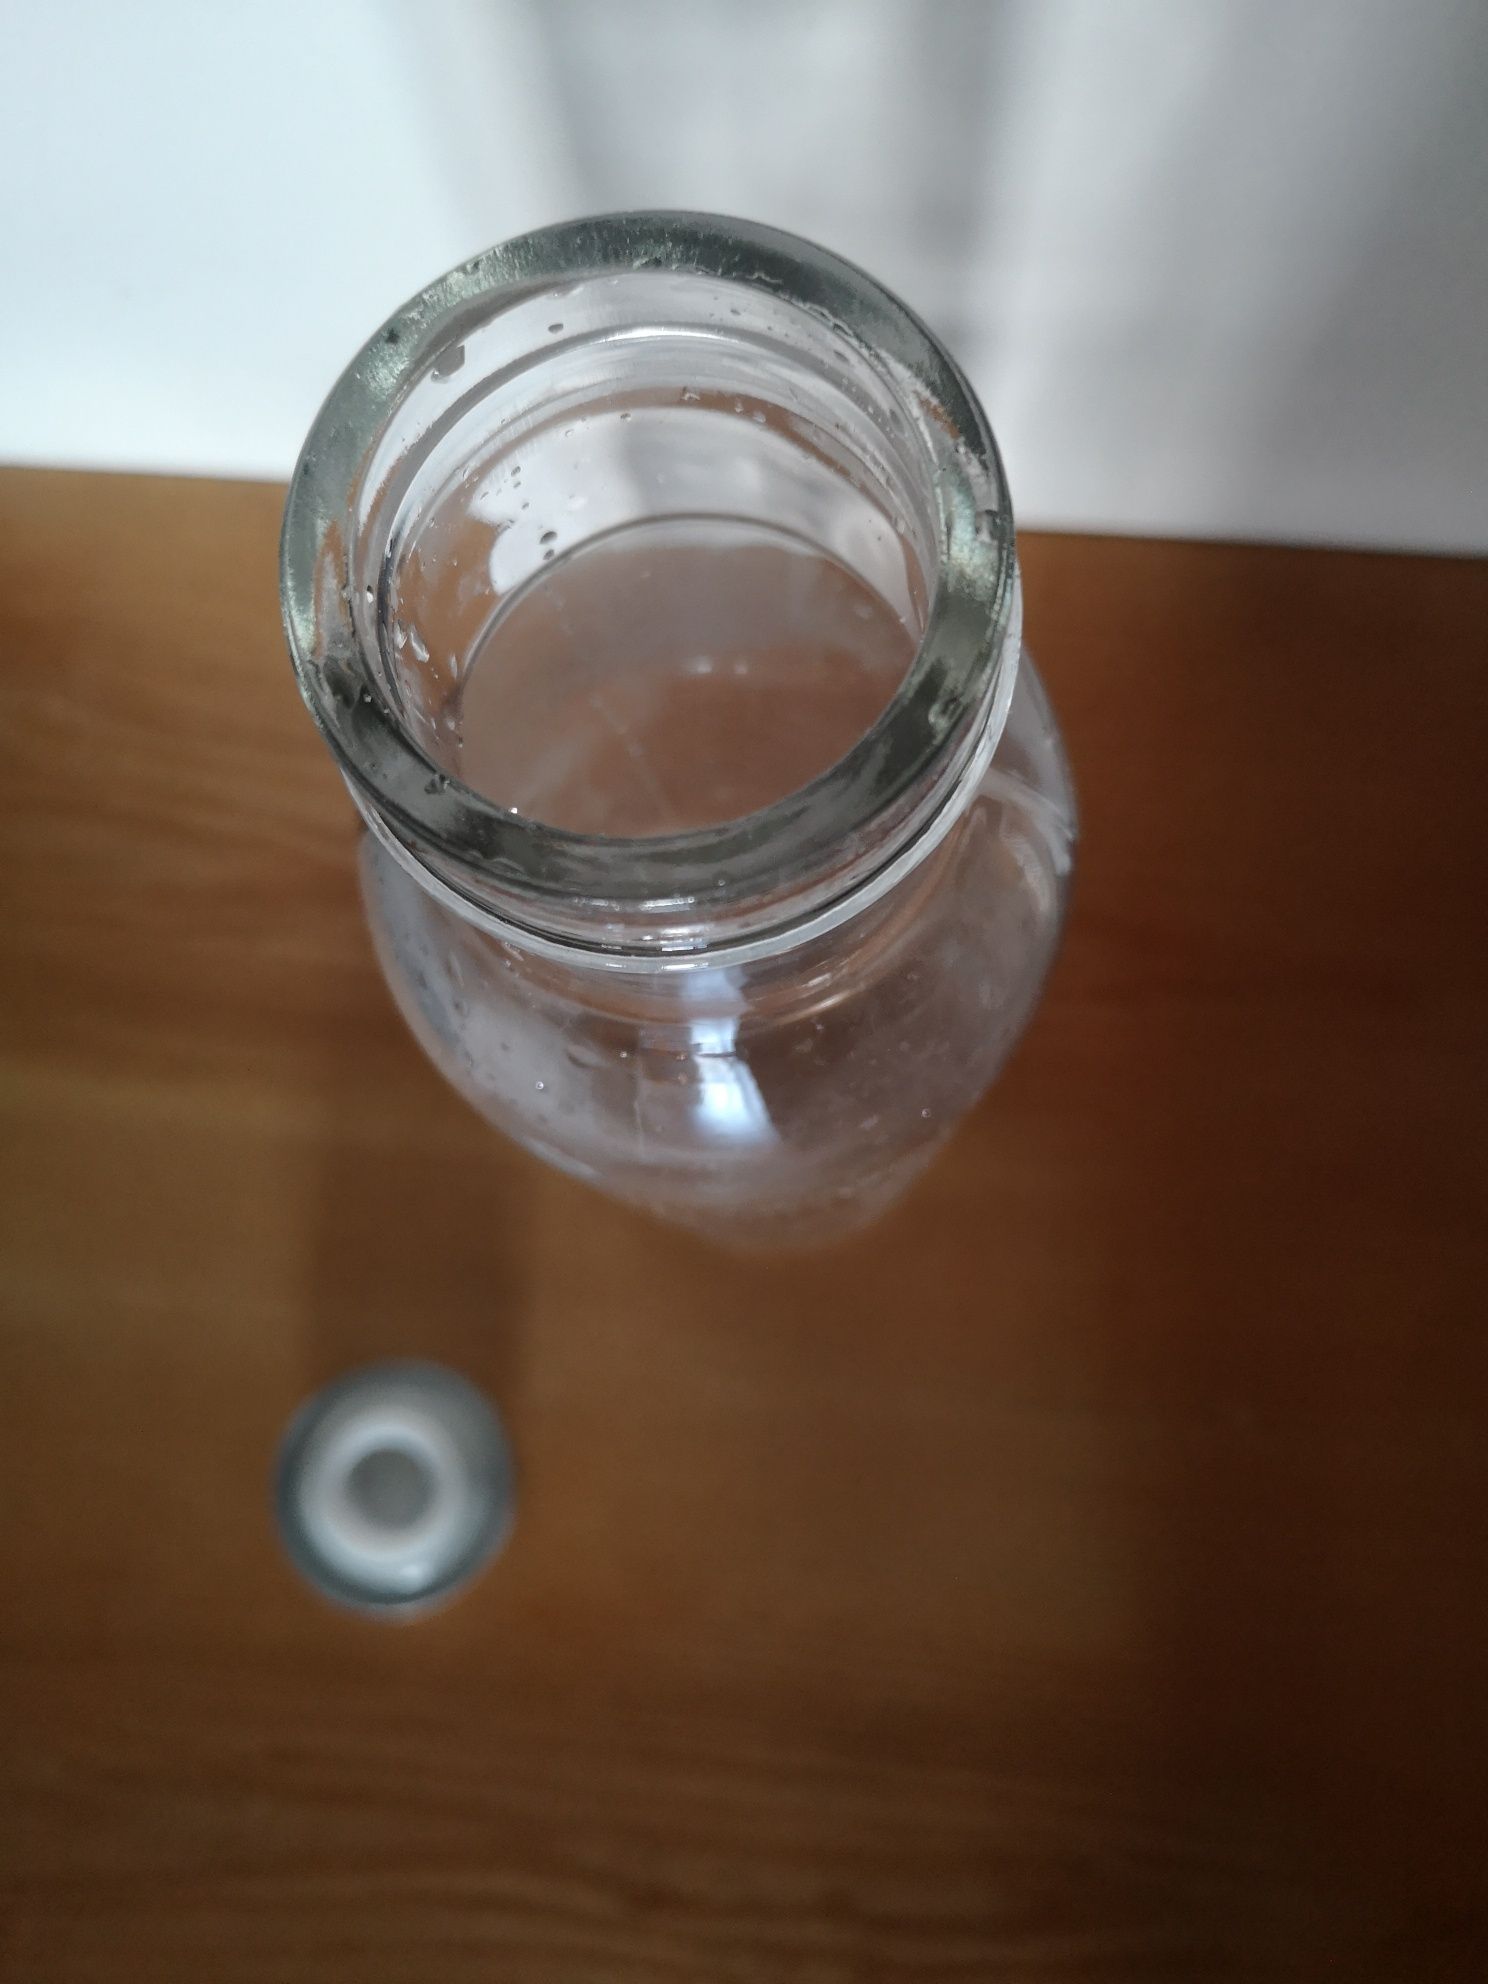 Szklana butelka do przechowywania art. spożywczych